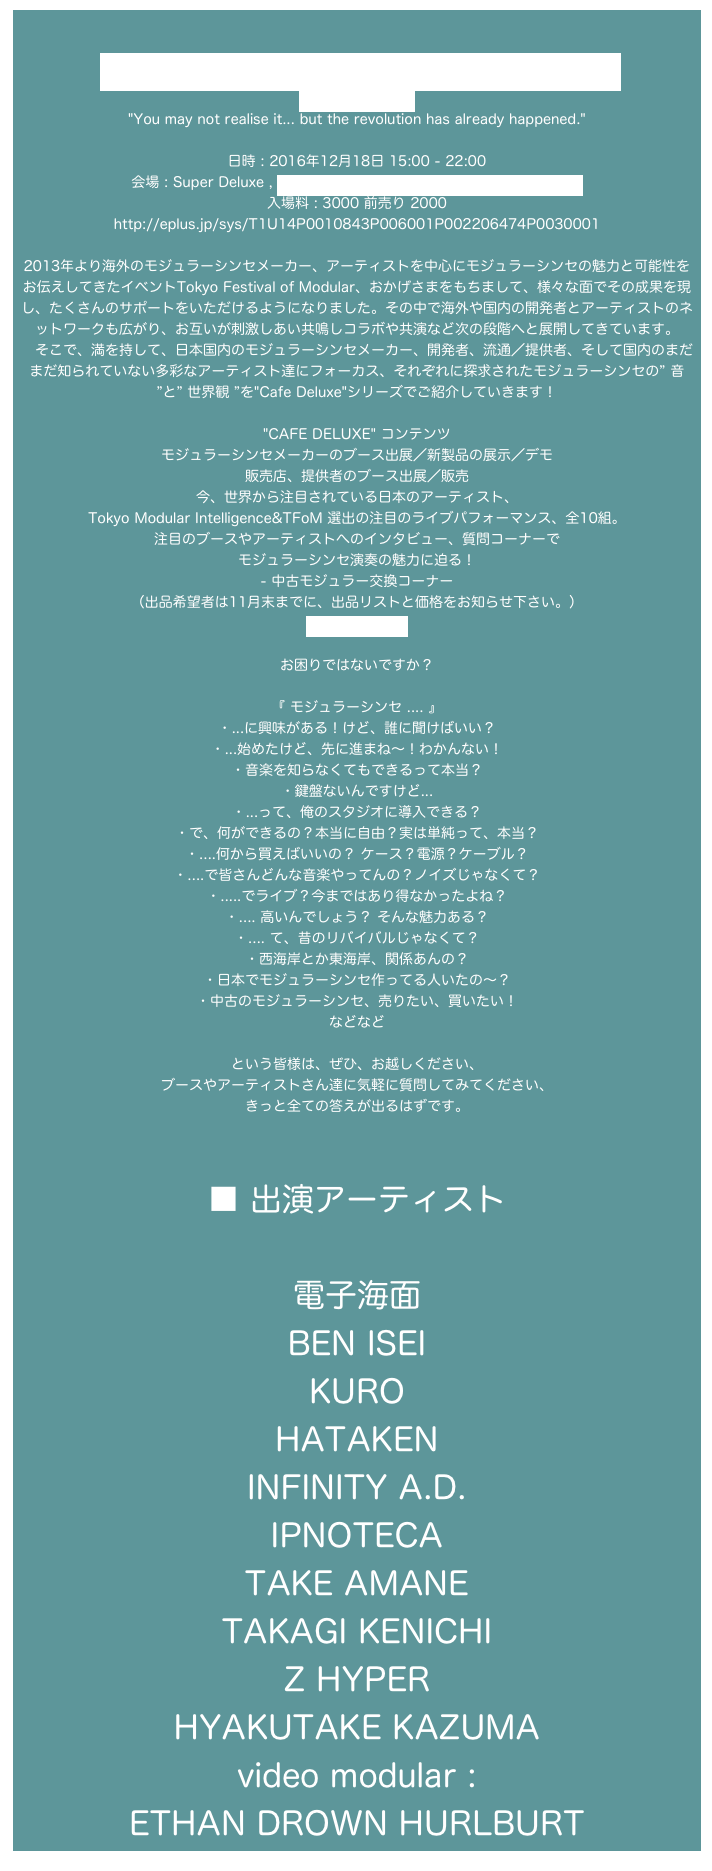 
Tokyo Festival of Modular ” Cafe Deluxe ”
http://tfom.info/
"You may not realise it... but the revolution has already happened."

日時 : 2016年12月18日 15:00 - 22:00
会場 : Super Deluxe , https://www.super-deluxe.com/room/4202/
入場料 : 3000 前売り 2000
http://eplus.jp/sys/T1U14P0010843P006001P002206474P0030001

2013年より海外のモジュラーシンセメーカー、アーティストを中心にモジュラーシンセの魅力と可能性をお伝えしてきたイベントTokyo Festival of Modular、おかげさまをもちまして、様々な面でその成果を現し、たくさんのサポートをいただけるようになりました。その中で海外や国内の開発者とアーティストのネットワークも広がり、お互いが刺激しあい共鳴しコラボや共演など次の段階へと展開してきています。
　そこで、満を持して、日本国内のモジュラーシンセメーカー、開発者、流通／提供者、そして国内のまだまだ知られていない多彩なアーティスト達にフォーカス、それぞれに探求されたモジュラーシンセの” 音 ”と” 世界観 ”を"Cafe Deluxe"シリーズでご紹介していきます！

"CAFE DELUXE" コンテンツ
モジュラーシンセメーカーのブース出展／新製品の展示／デモ
販売店、提供者のブース出展／販売
今、世界から注目されている日本のアーティスト、 Tokyo Modular Intelligence&TFoM 選出の注目のライブパフォーマンス、全10組。
注目のブースやアーティストへのインタビュー、質問コーナーで
モジュラーシンセ演奏の魅力に迫る！
- 中古モジュラー交換コーナー
（出品希望者は11月末までに、出品リストと価格をお知らせ下さい。）
info@tfom.info

お困りではないですか？

『 モジュラーシンセ .... 』
・...に興味がある！けど、誰に聞けばいい？
・...始めたけど、先に進まね〜！わかんない！
・音楽を知らなくてもできるって本当？
・鍵盤ないんですけど...
・...って、俺のスタジオに導入できる？
・で、何ができるの？本当に自由？実は単純って、本当？
・....何から買えばいいの？ ケース？電源？ケーブル？
・....で皆さんどんな音楽やってんの？ノイズじゃなくて？
・.....でライブ？今まではあり得なかったよね？
・.... 高いんでしょう？ そんな魅力ある？
・.... て、昔のリバイバルじゃなくて？
・西海岸とか東海岸、関係あんの？
・日本でモジュラーシンセ作ってる人いたの〜？
・中古のモジュラーシンセ、売りたい、買いたい！
などなど

という皆様は、ぜひ、お越しください、
ブースやアーティストさん達に気軽に質問してみてください、
きっと全ての答えが出るはずです。



■ 出演アーティスト

電子海面
BEN ISEI
KURO
HATAKEN
INFINITY A.D.
IPNOTECA
TAKE AMANE
TAKAGI KENICHI
Z HYPER
HYAKUTAKE KAZUMA
video modular :  ETHAN DROWN HURLBURT
